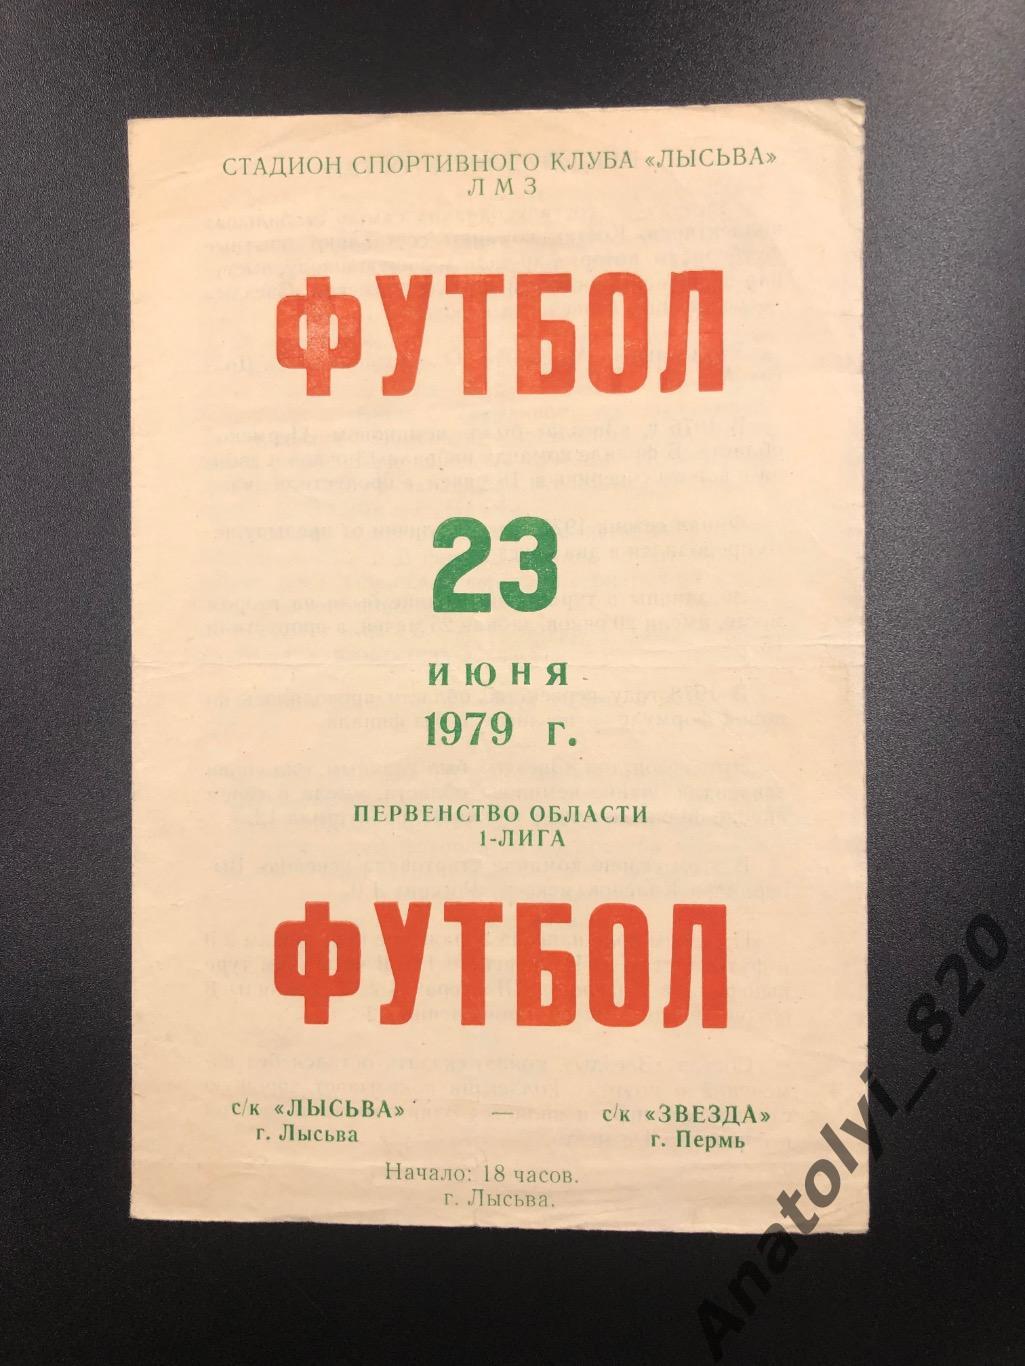 Лысьва - Звезда Пермь, 23.06.1979 первенство области